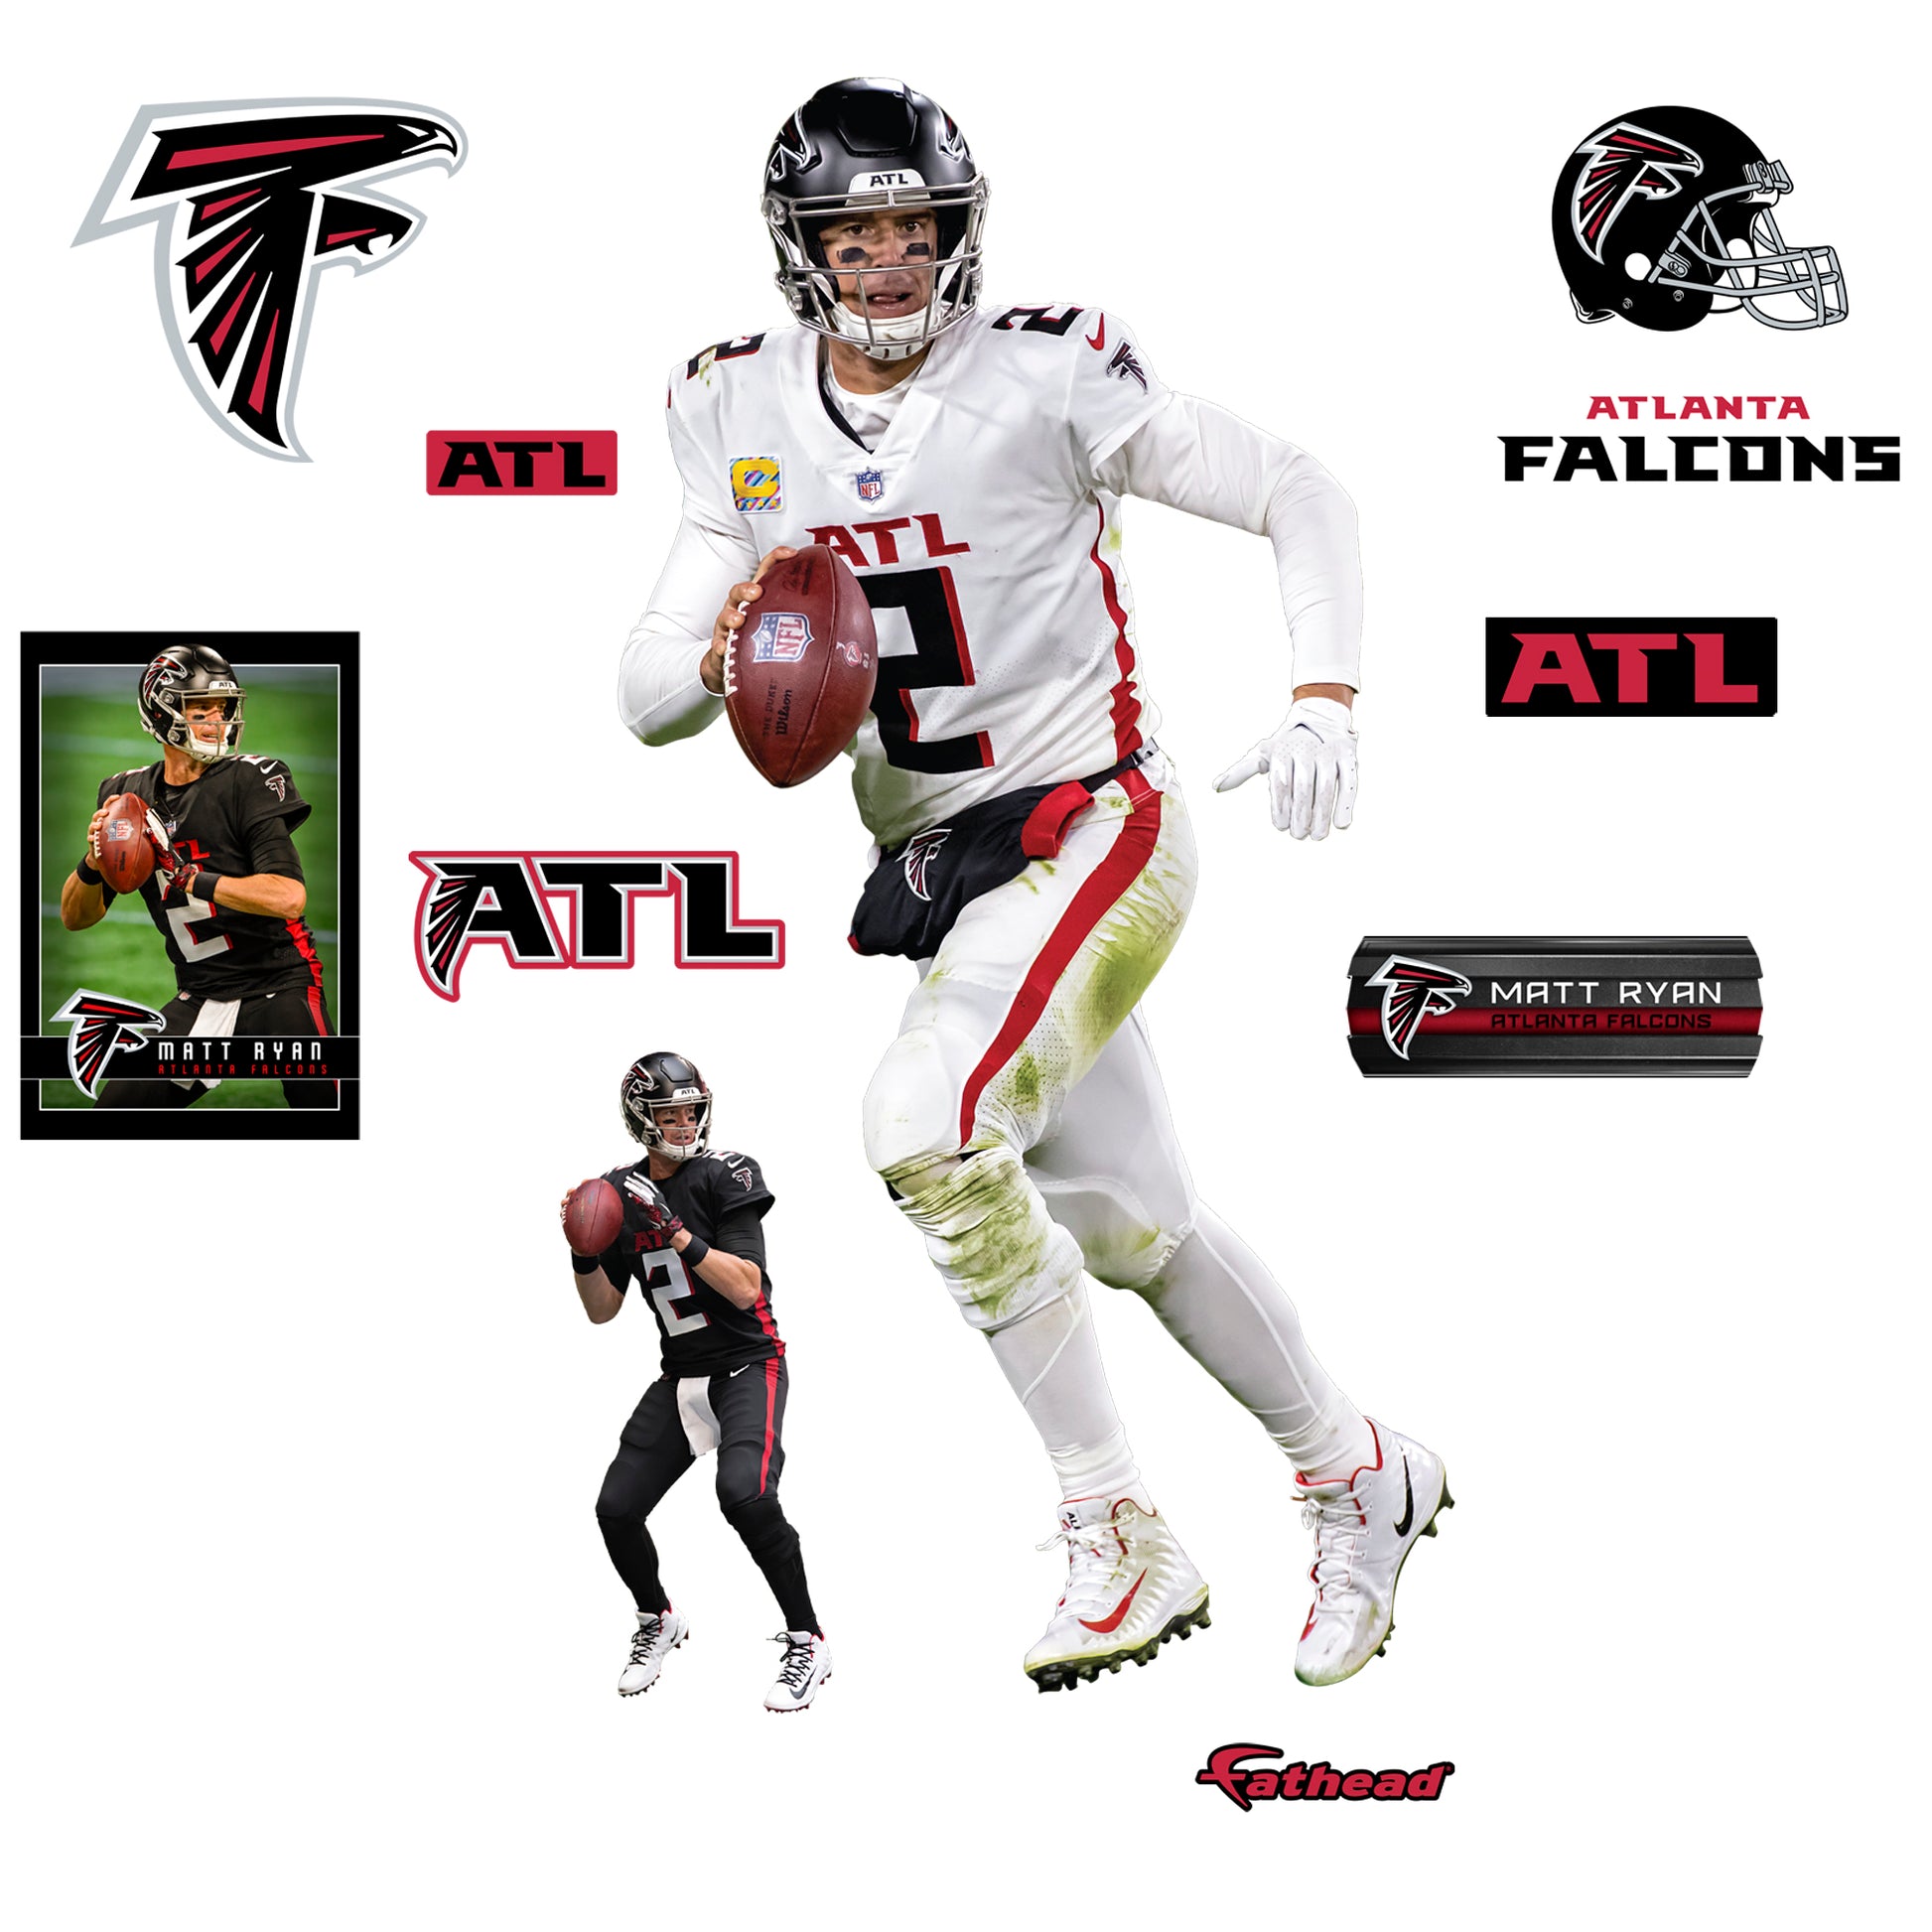 Atlanta Falcons: Matt Ryan 2020 - NFL Removable Wall Adhesive Wall Decal Large